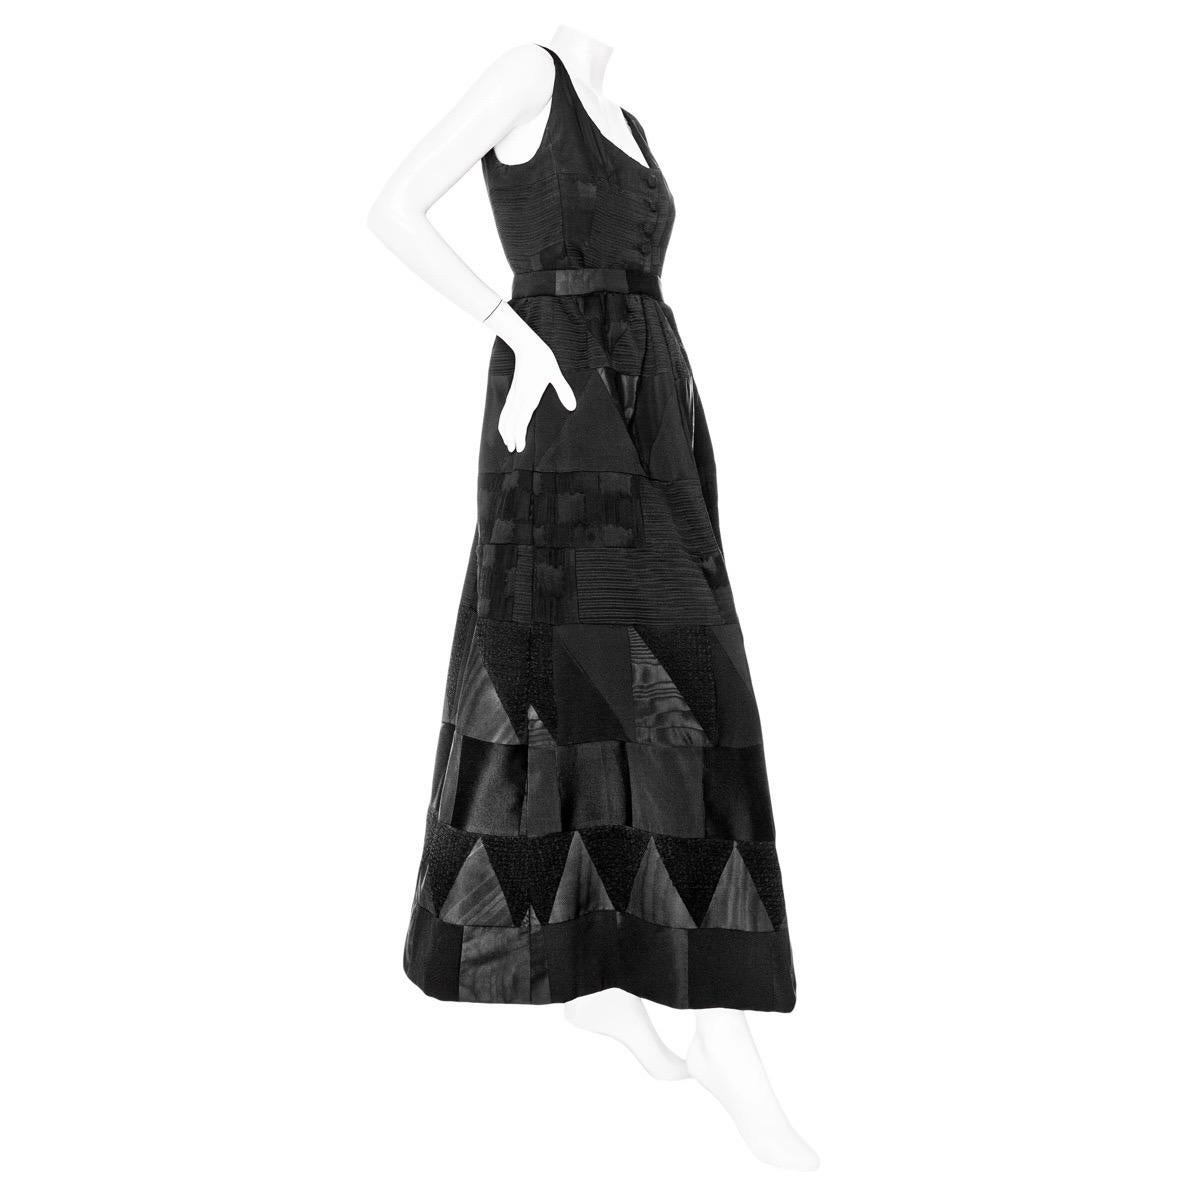 Yves Saint Laurent Vintage Haute Couture - Ensemble deux pièces noir - Top et jupe

Vintage ; vers les années 1960
Noir
Panneaux de patchwork de différents matériaux et techniques
Ensemble deux pièces comprenant un haut et une jupe
Le top est sans